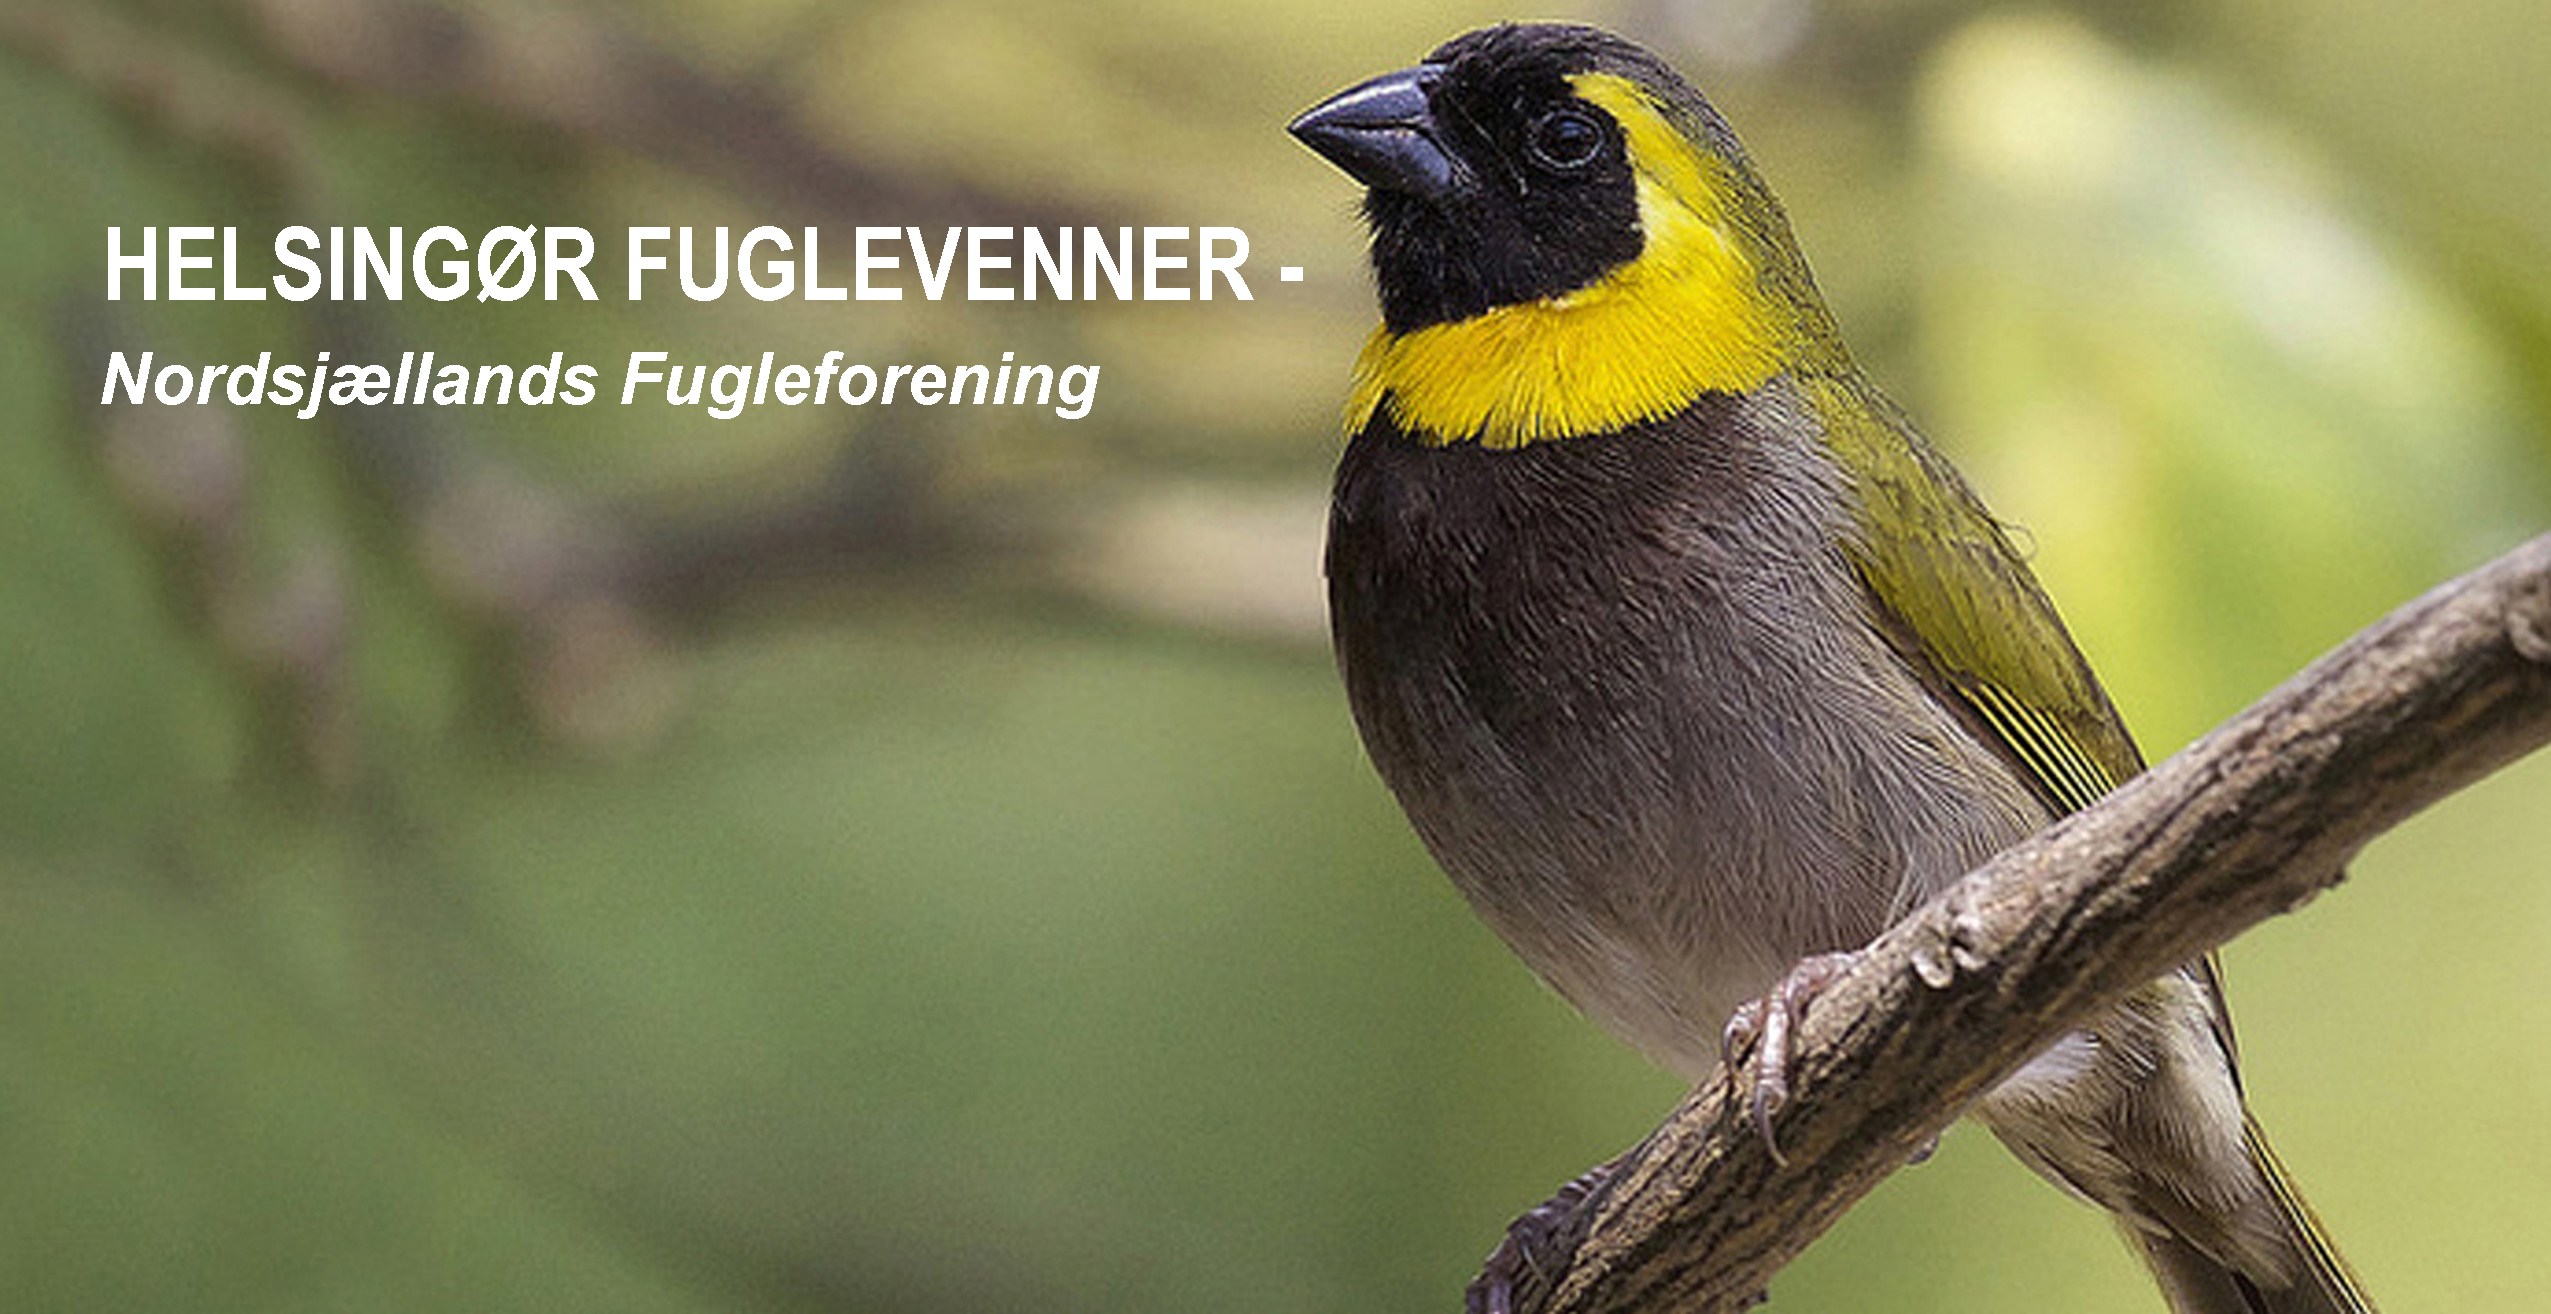 HELSINGØR FUGLEVENNER - Nordsjællands Fugleforening